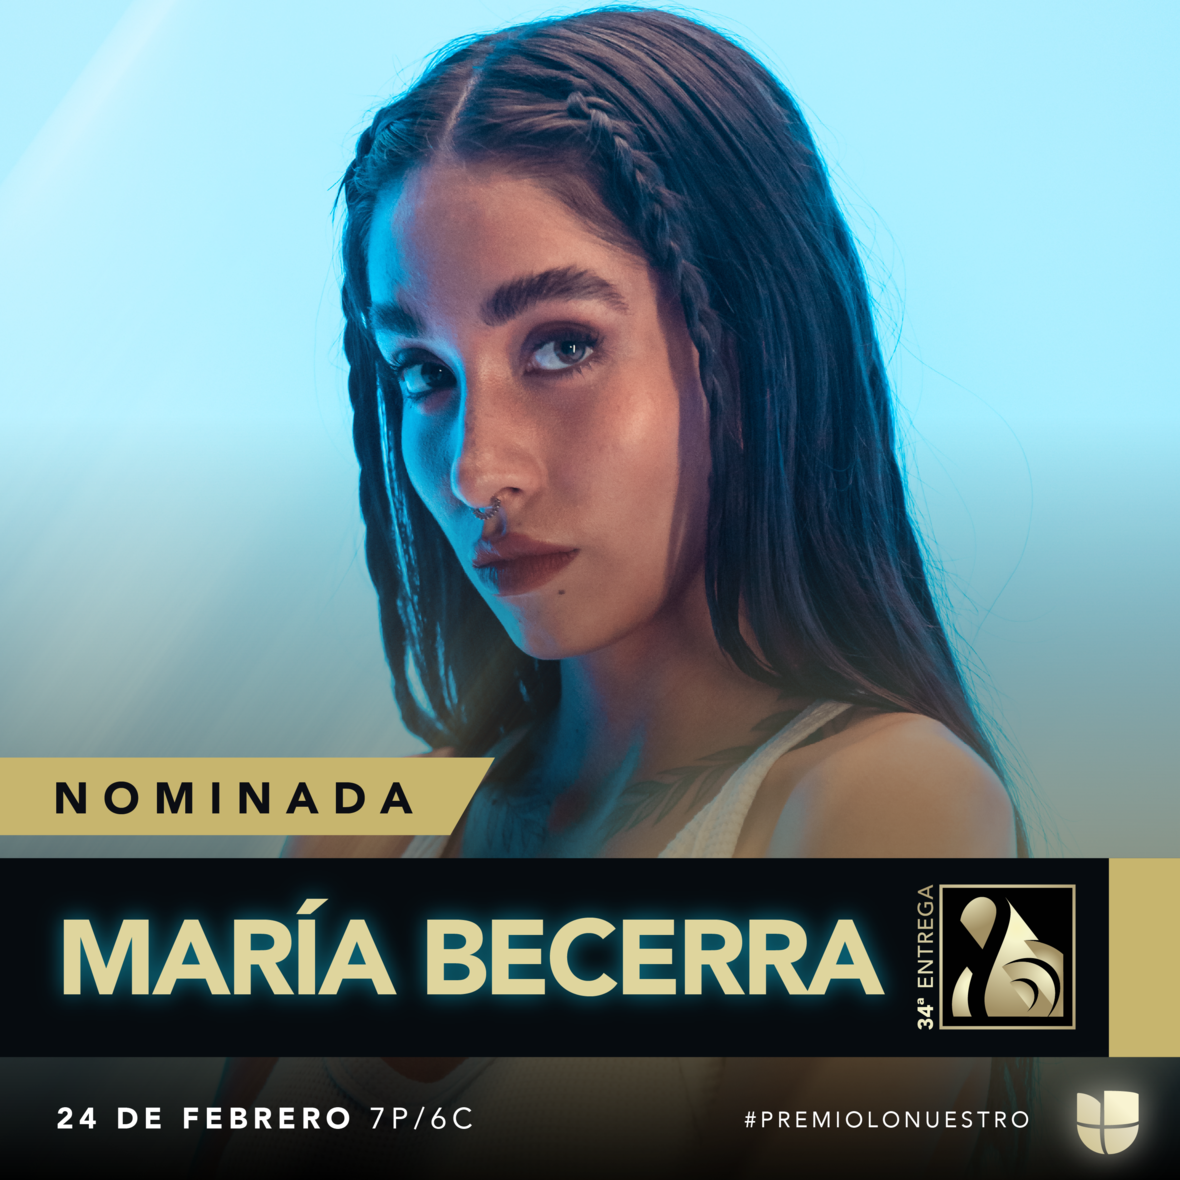 MARÍA BECERRA recibe tres nominaciones a Premio Lo Nuestro No Limits!